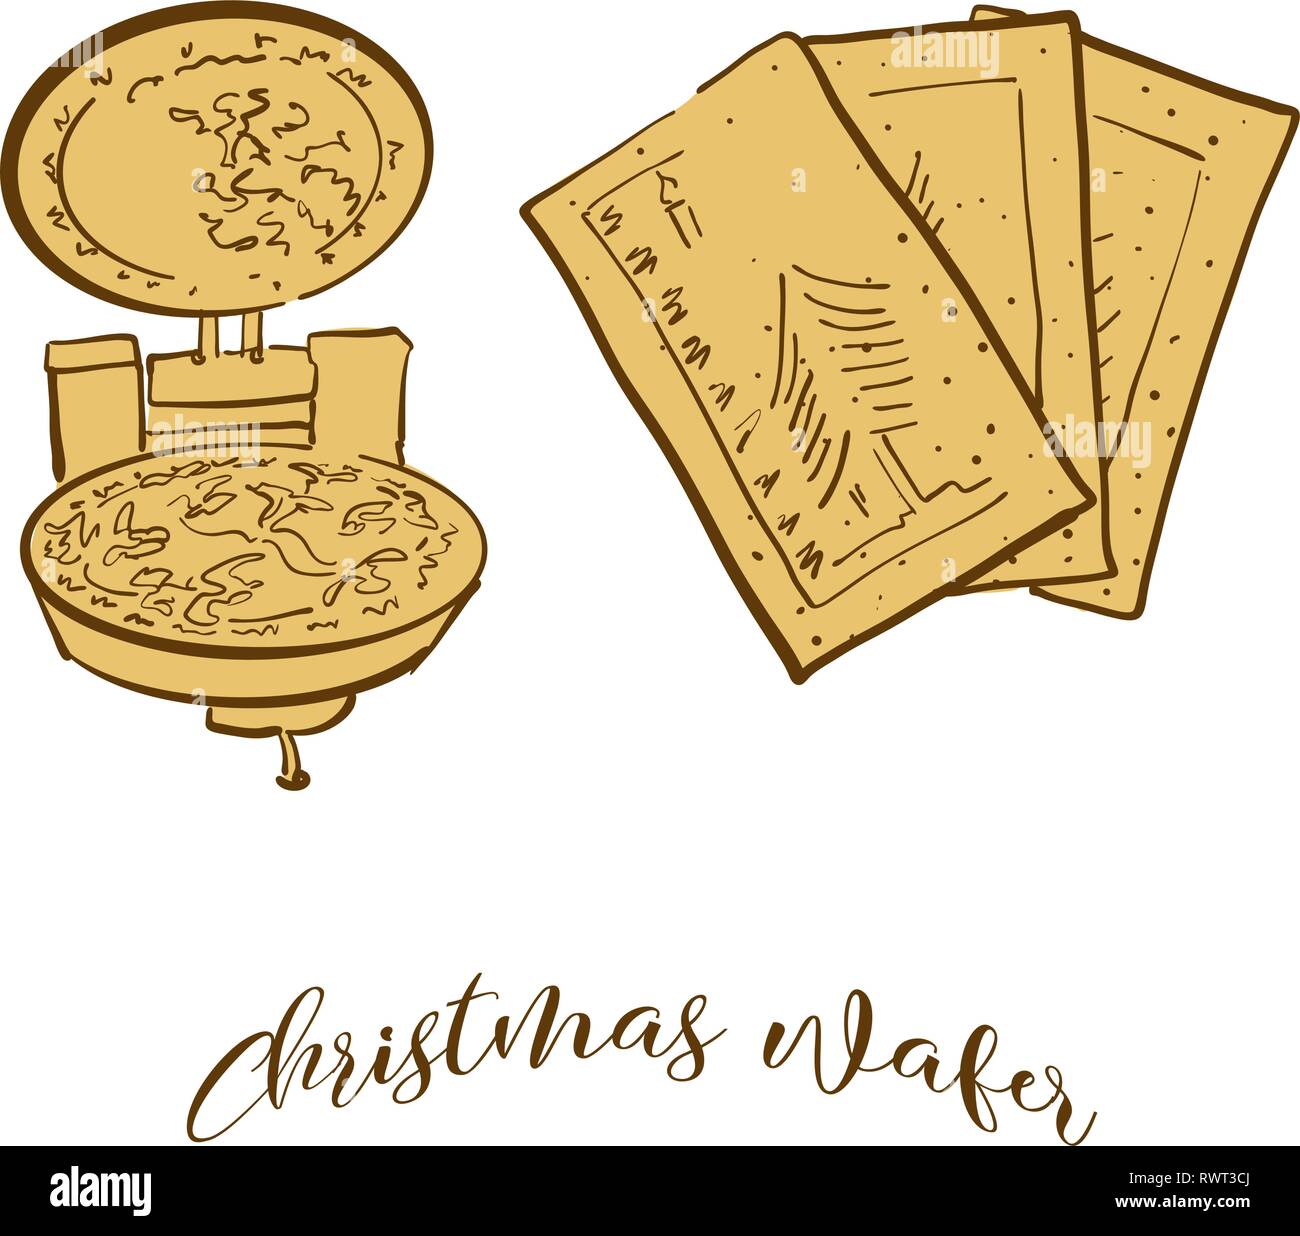 Farbige Skizzen von Weihnachten wafer Brot. Vektor Zeichnung von knusprigem Brot essen, in der Regel in Osteuropa bekannt. Farbige Brot Abbildung Serie. Stock Vektor